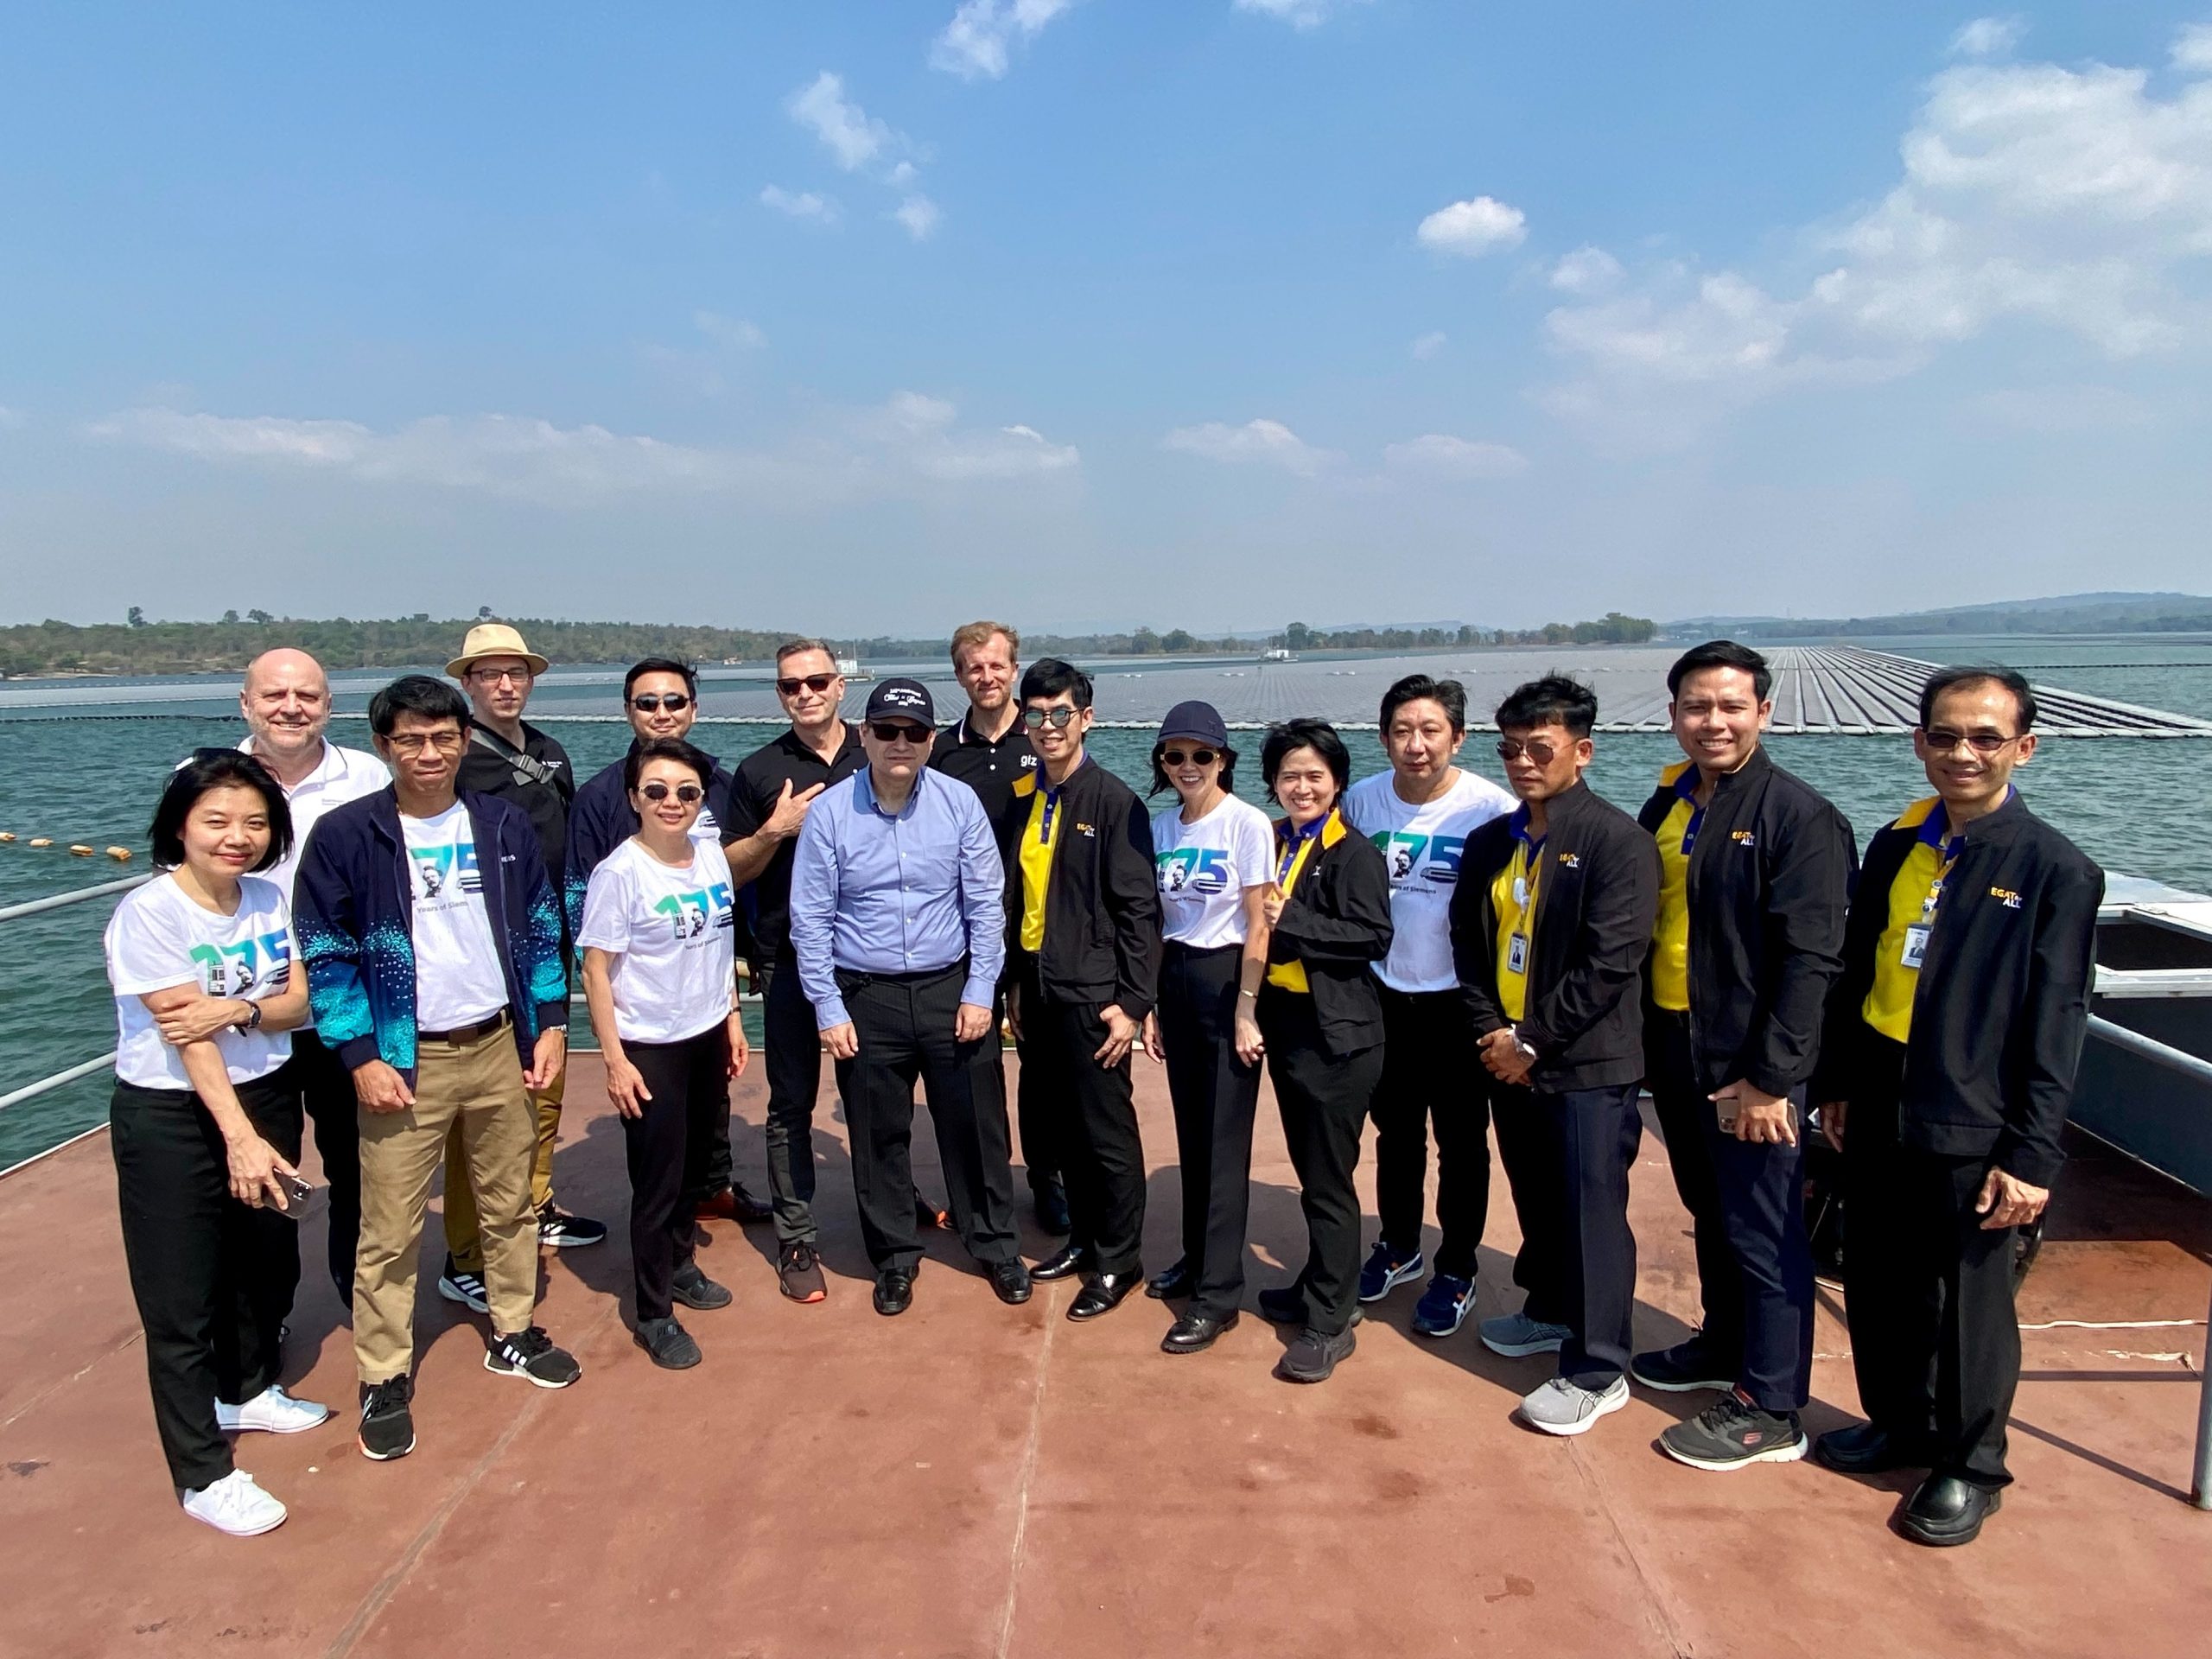 德意志联邦共和国驻泰国大使馆高度赞扬世界最大的混合漂浮太阳能蓄水电站，作为环境友好型能源的同时还为社区带来可持续发展